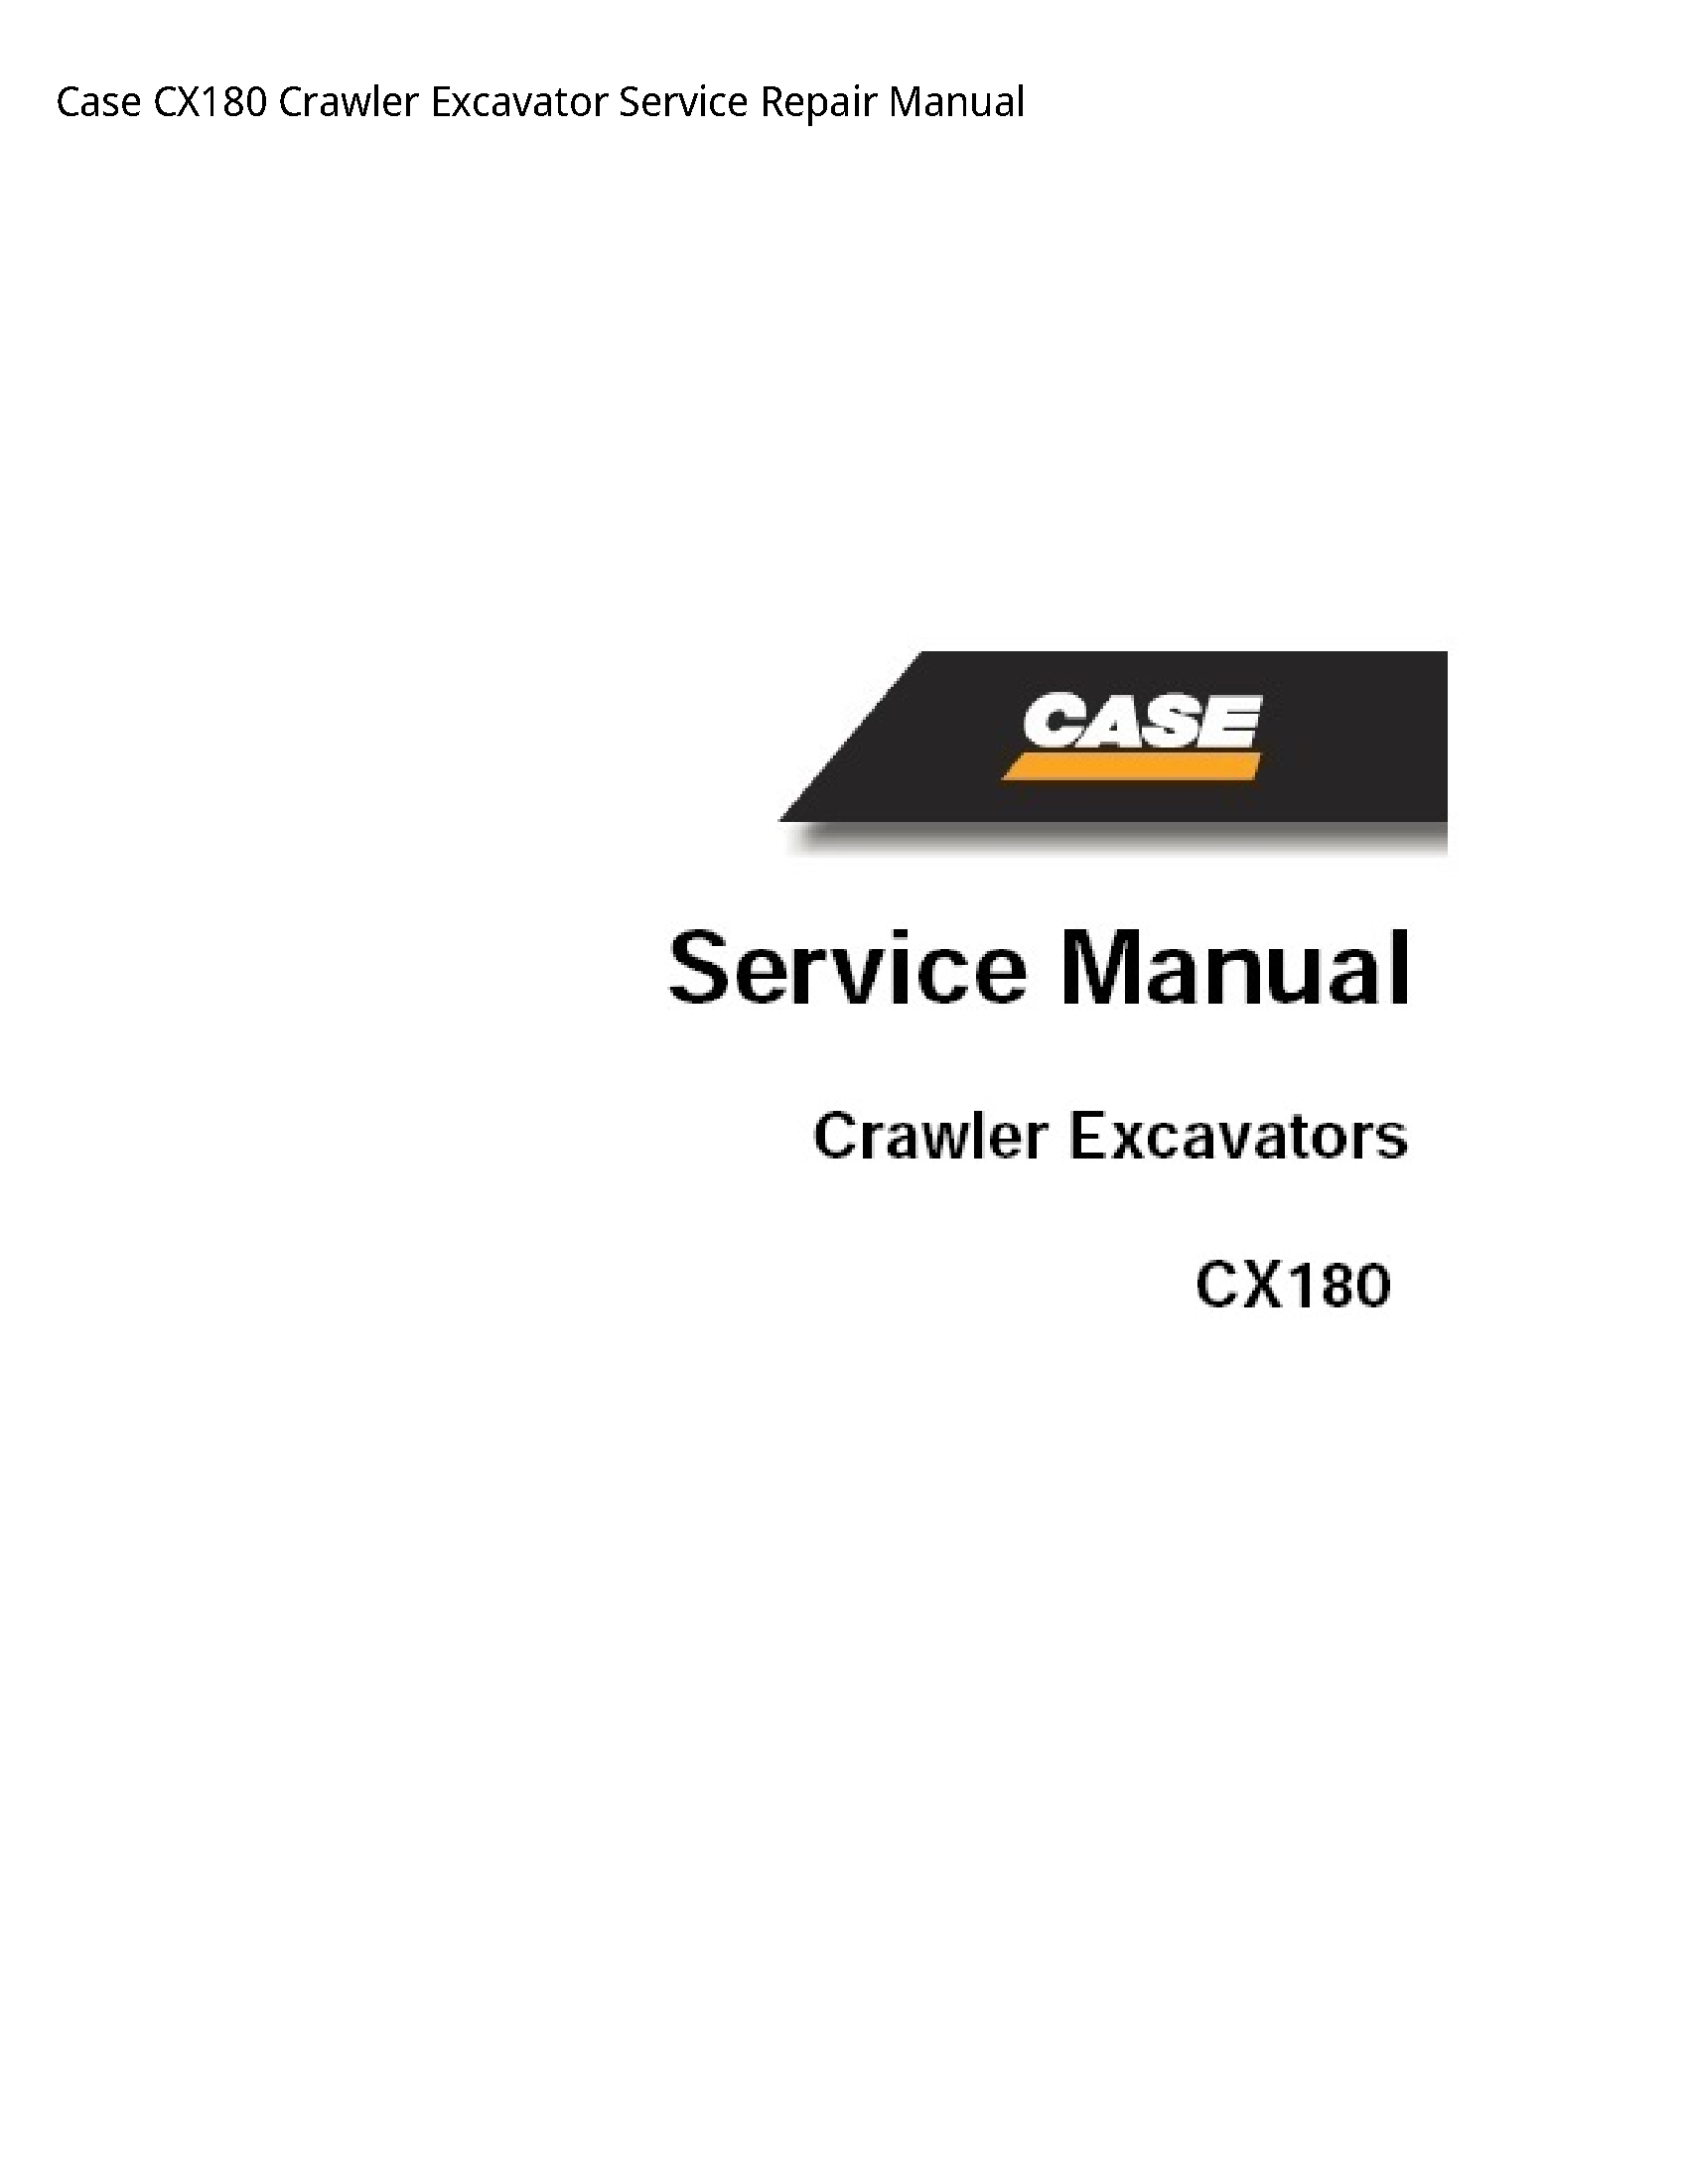 Case/Case IH CX180 Crawler Excavator manual